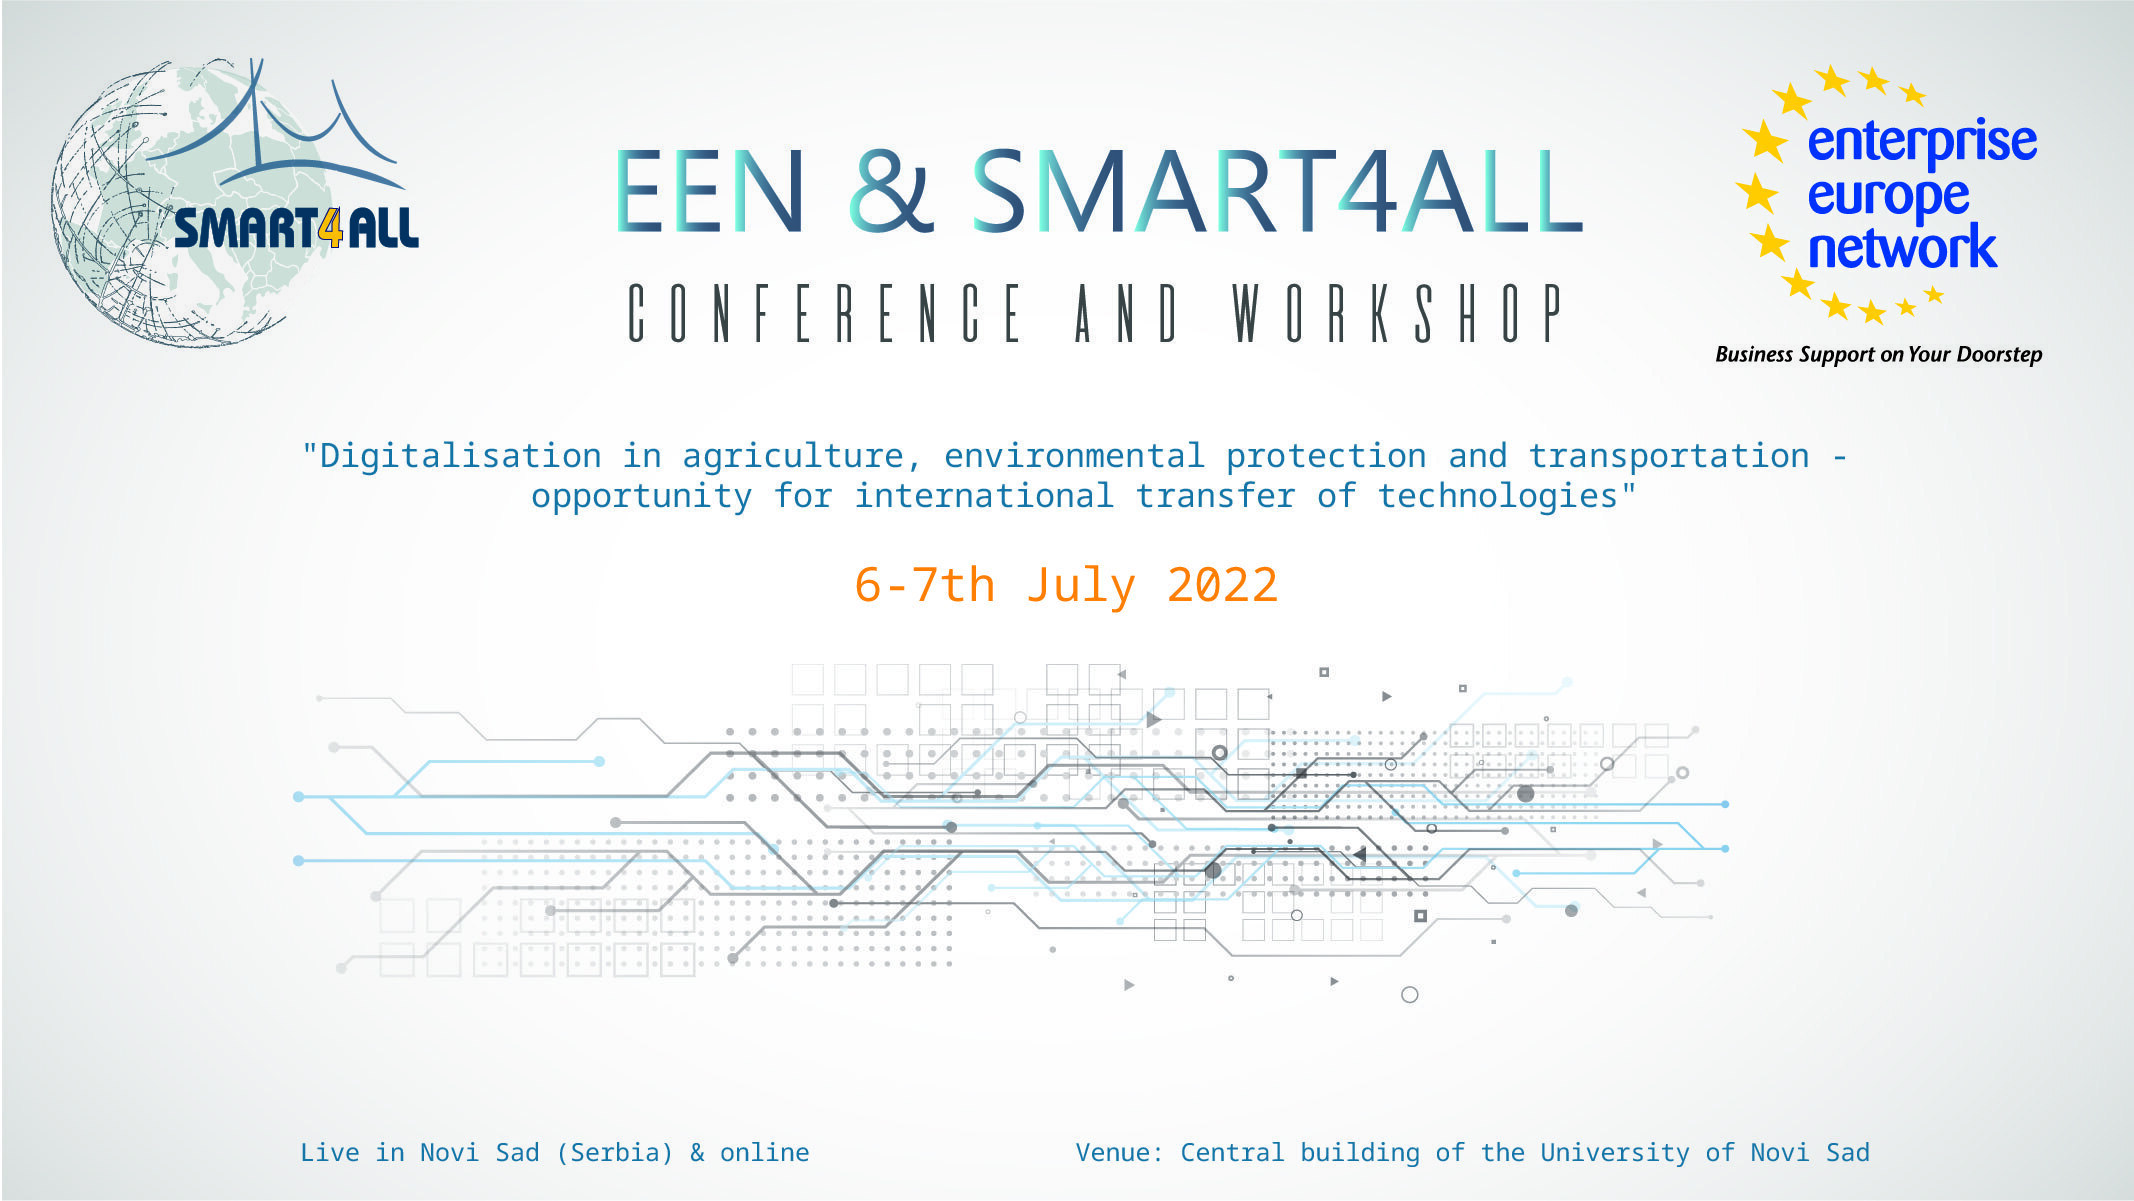 6-7 July: EEN & SMART4ALL Conference and Workshop in Novi Sad, Serbia (hybrid event)